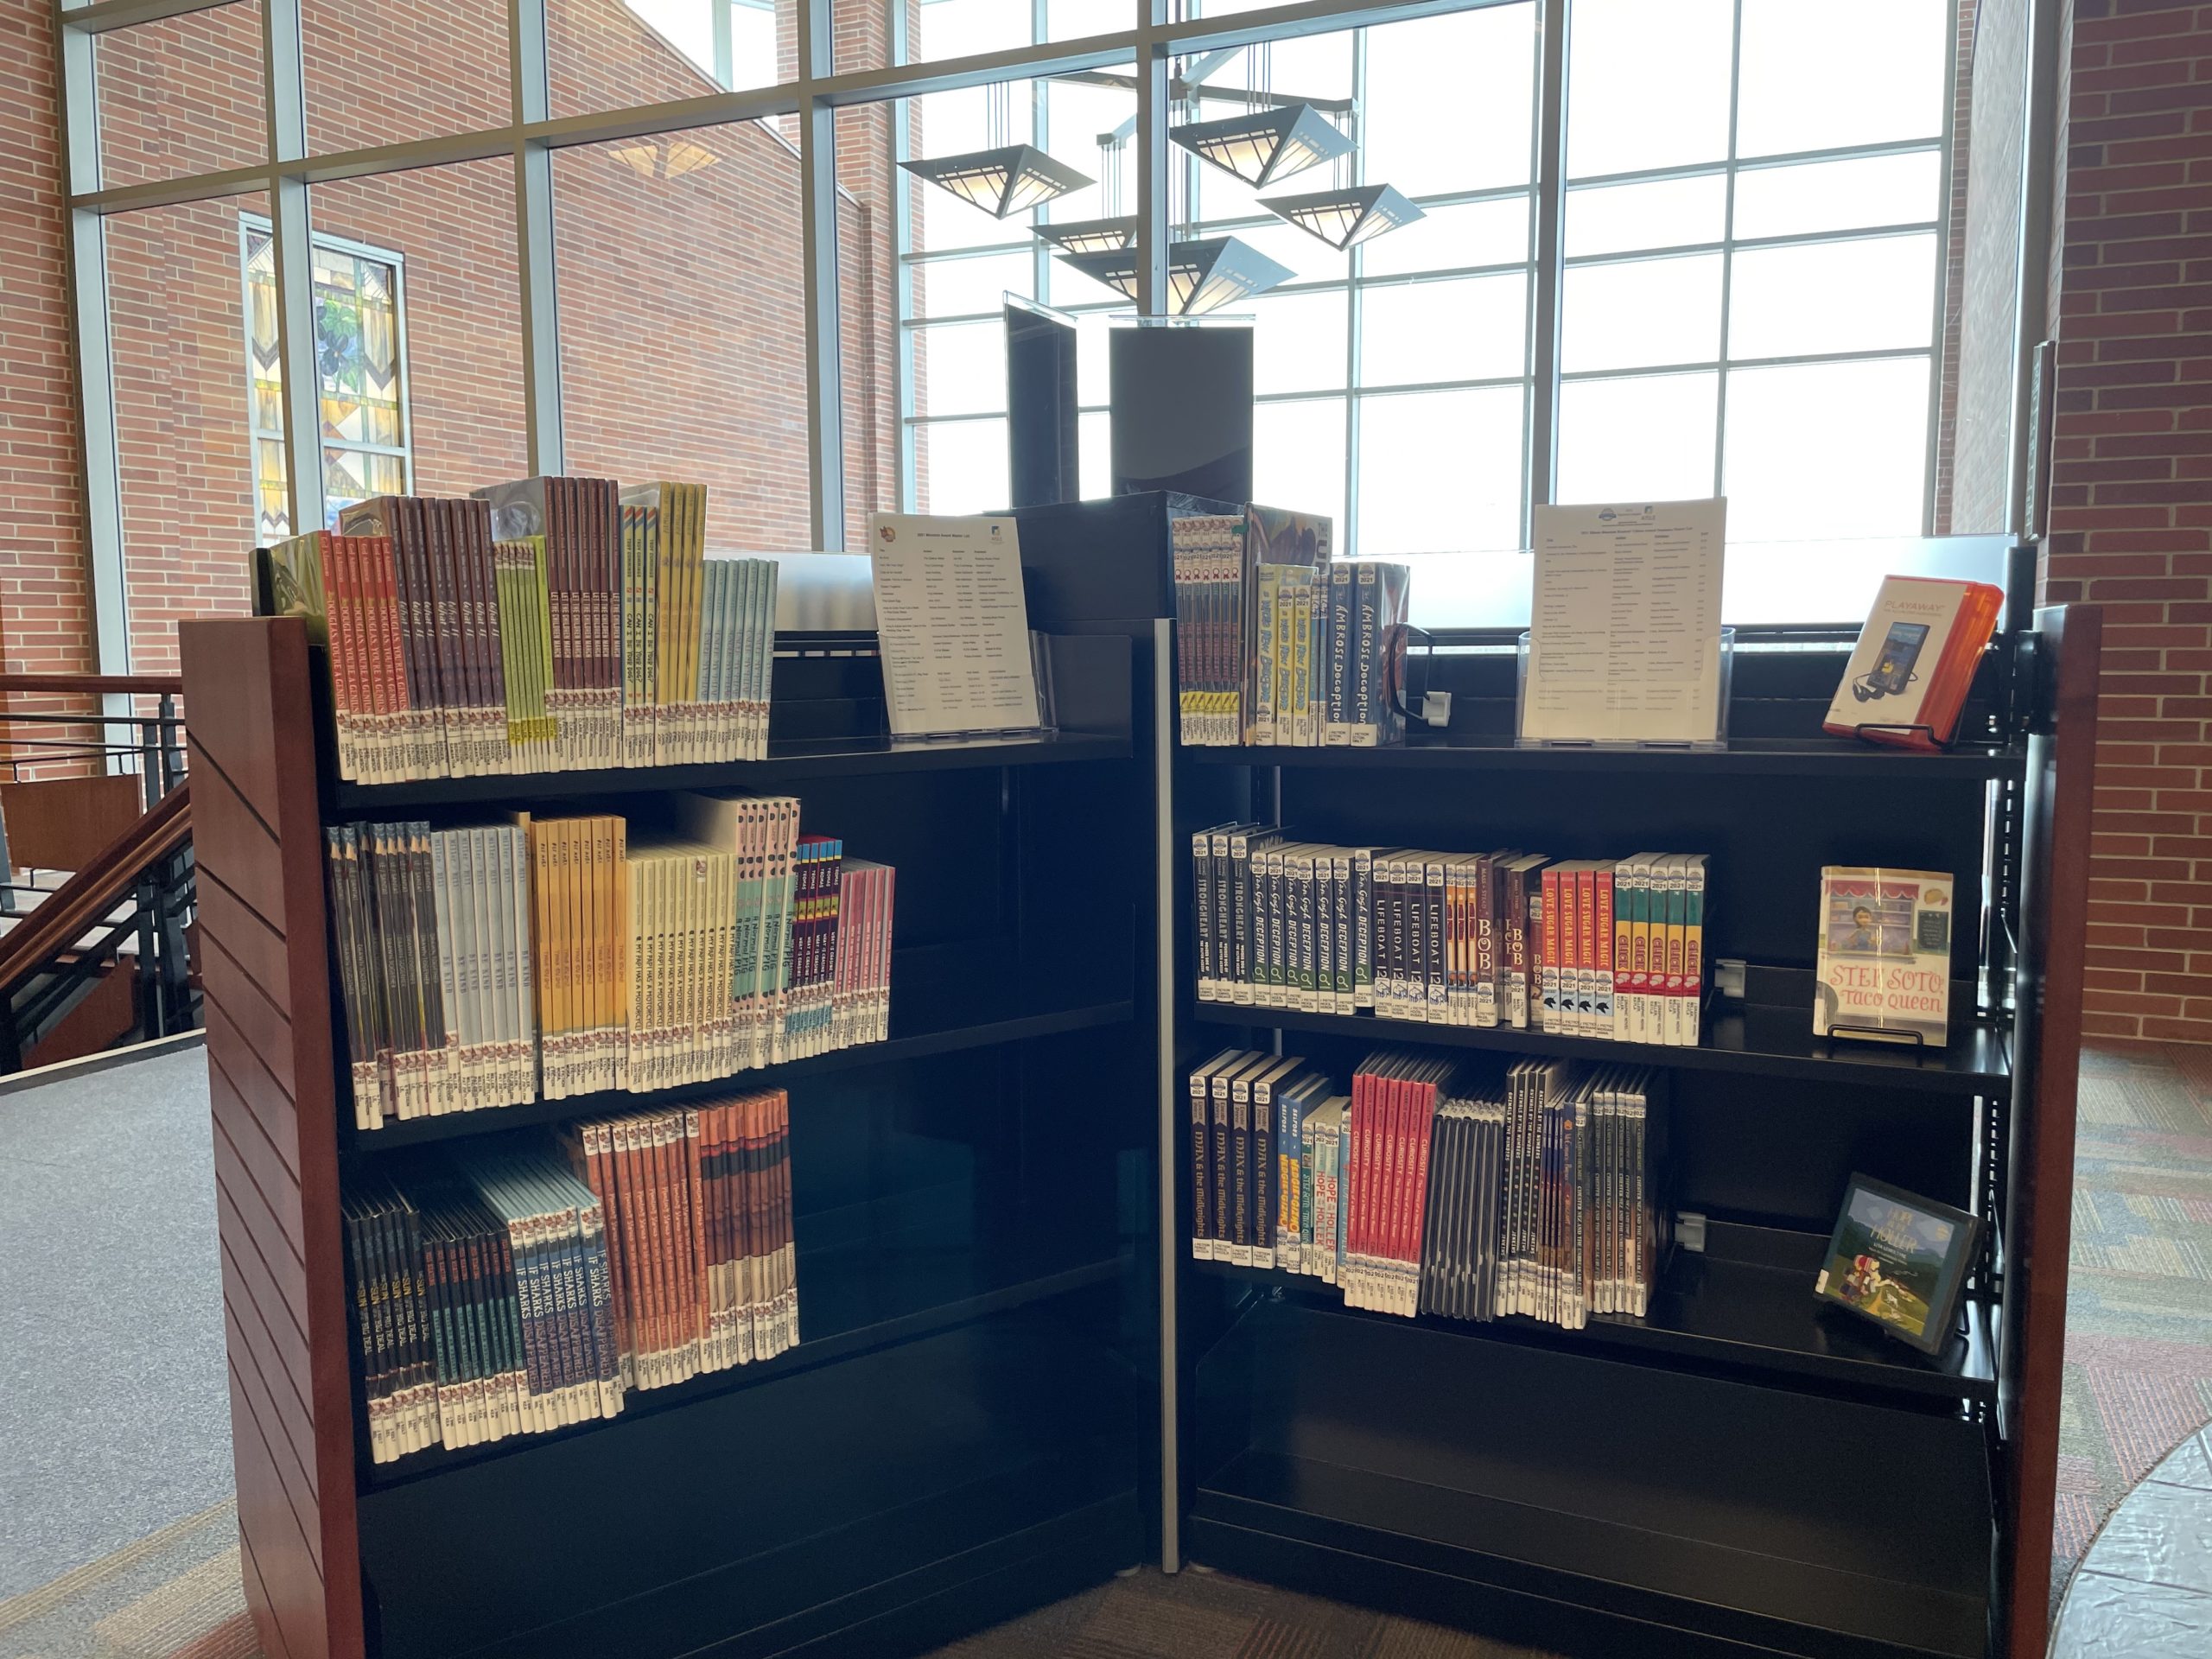 library shelves with award-winning books for children